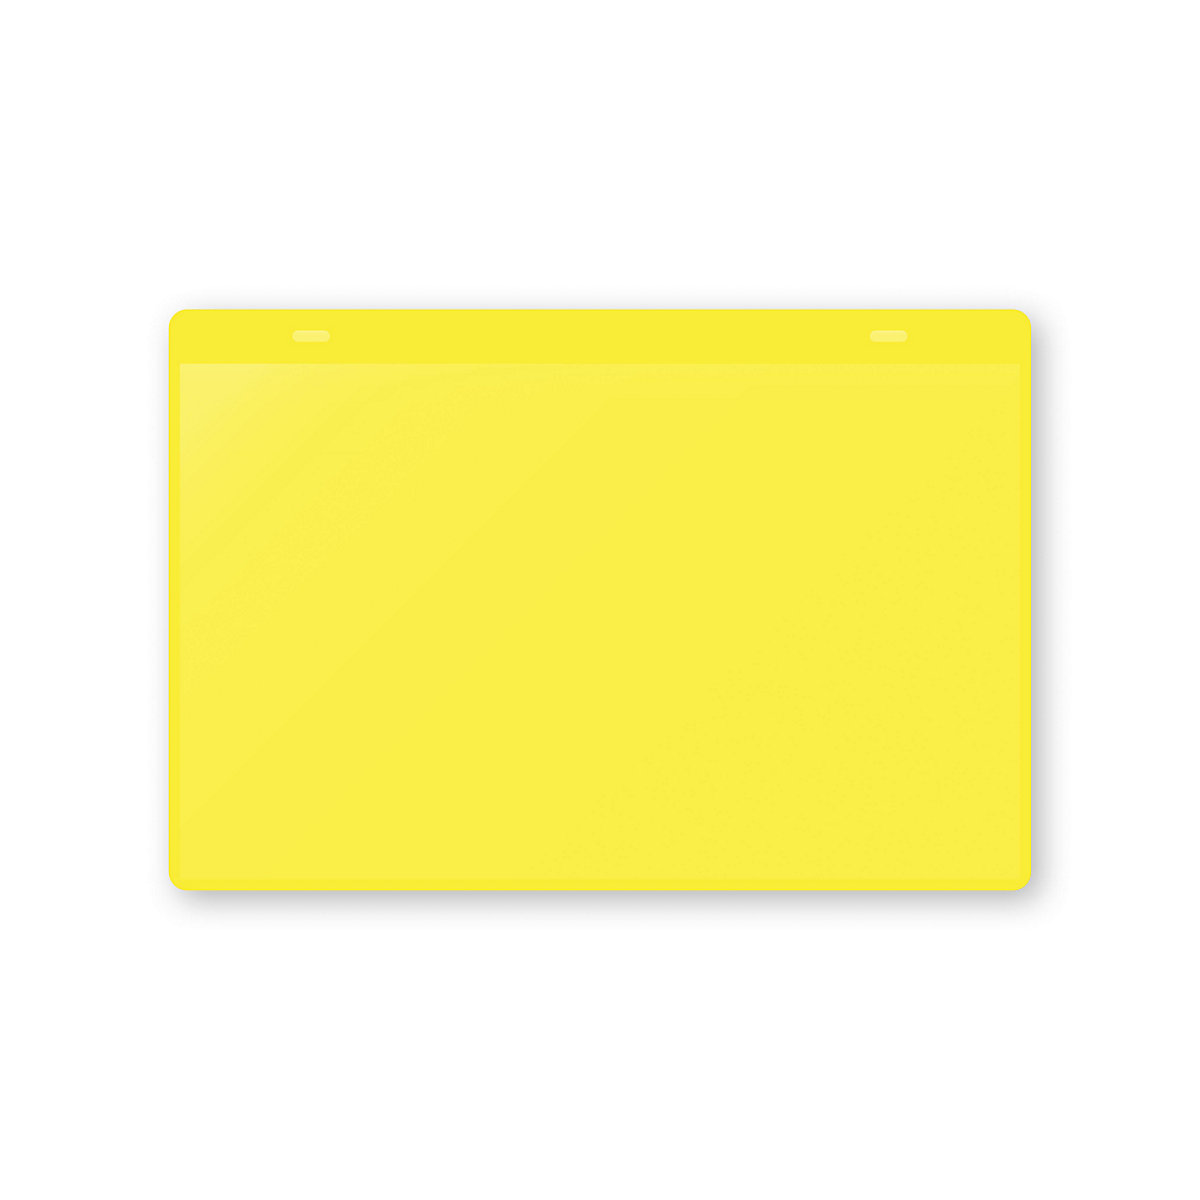 Öntapadó dokumentumtartó tasakok, DIN A5, fekvő, cs. e. 50 db, sárga